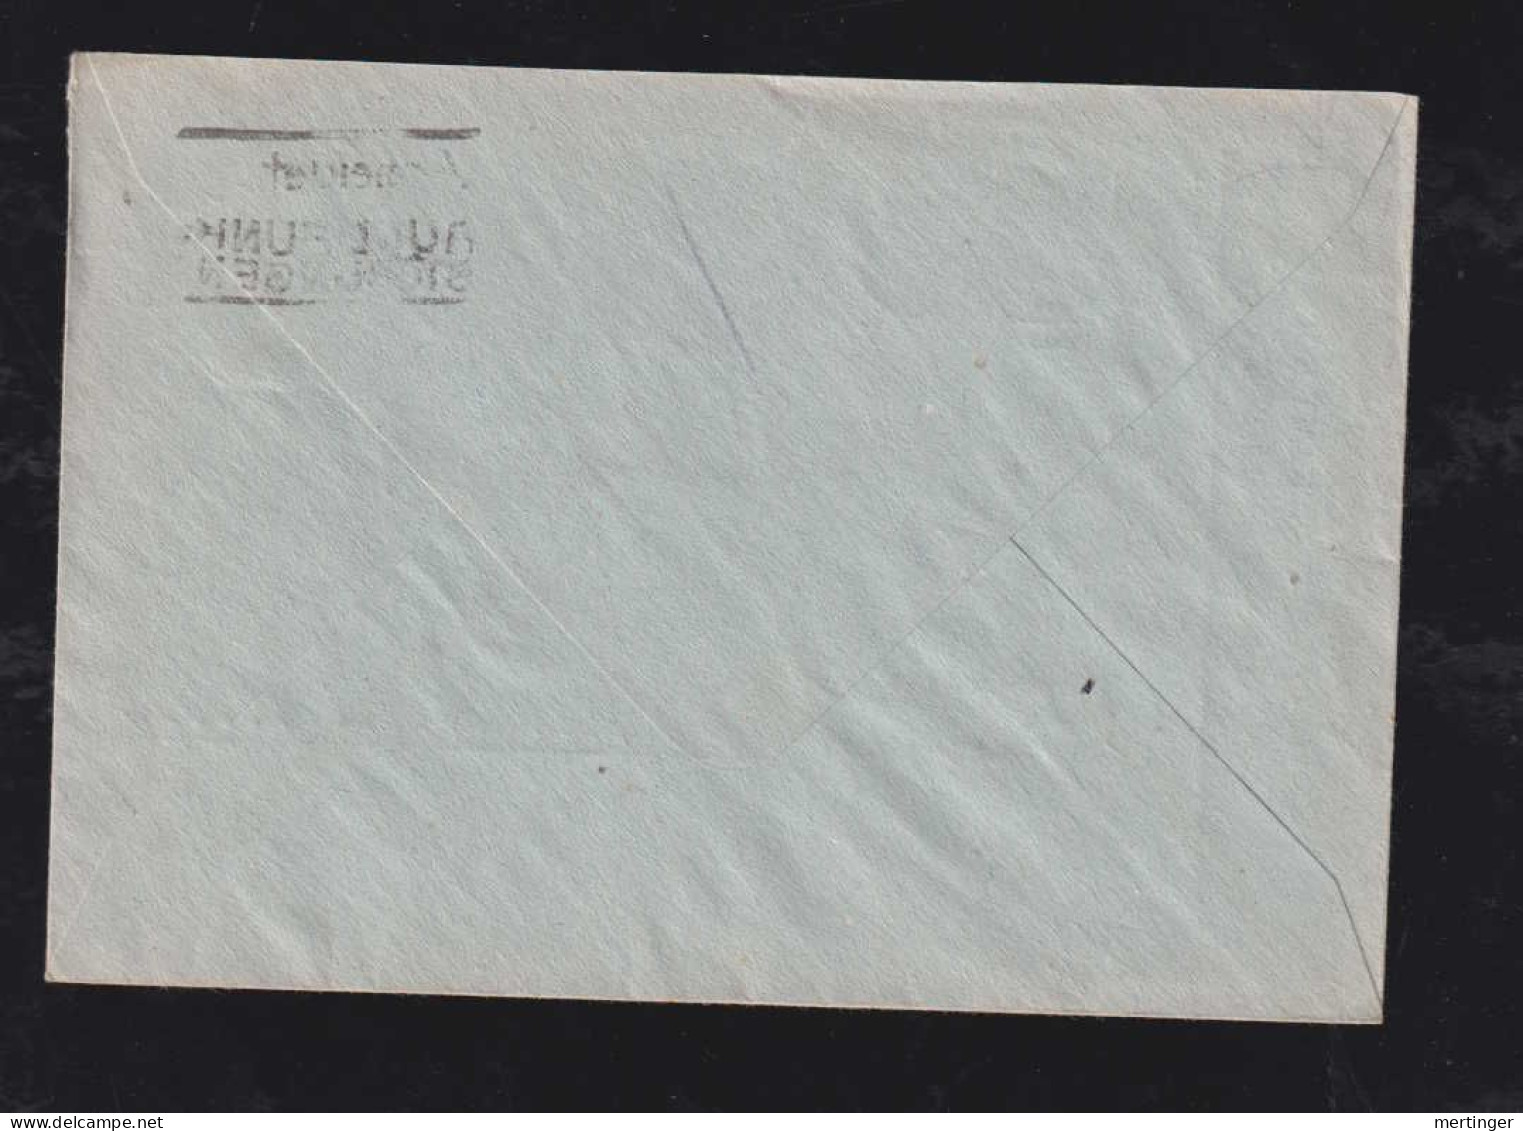 All. Besetzung 1946 Postsache Brief Postscheckamt Köln X VIERSEN - Covers & Documents